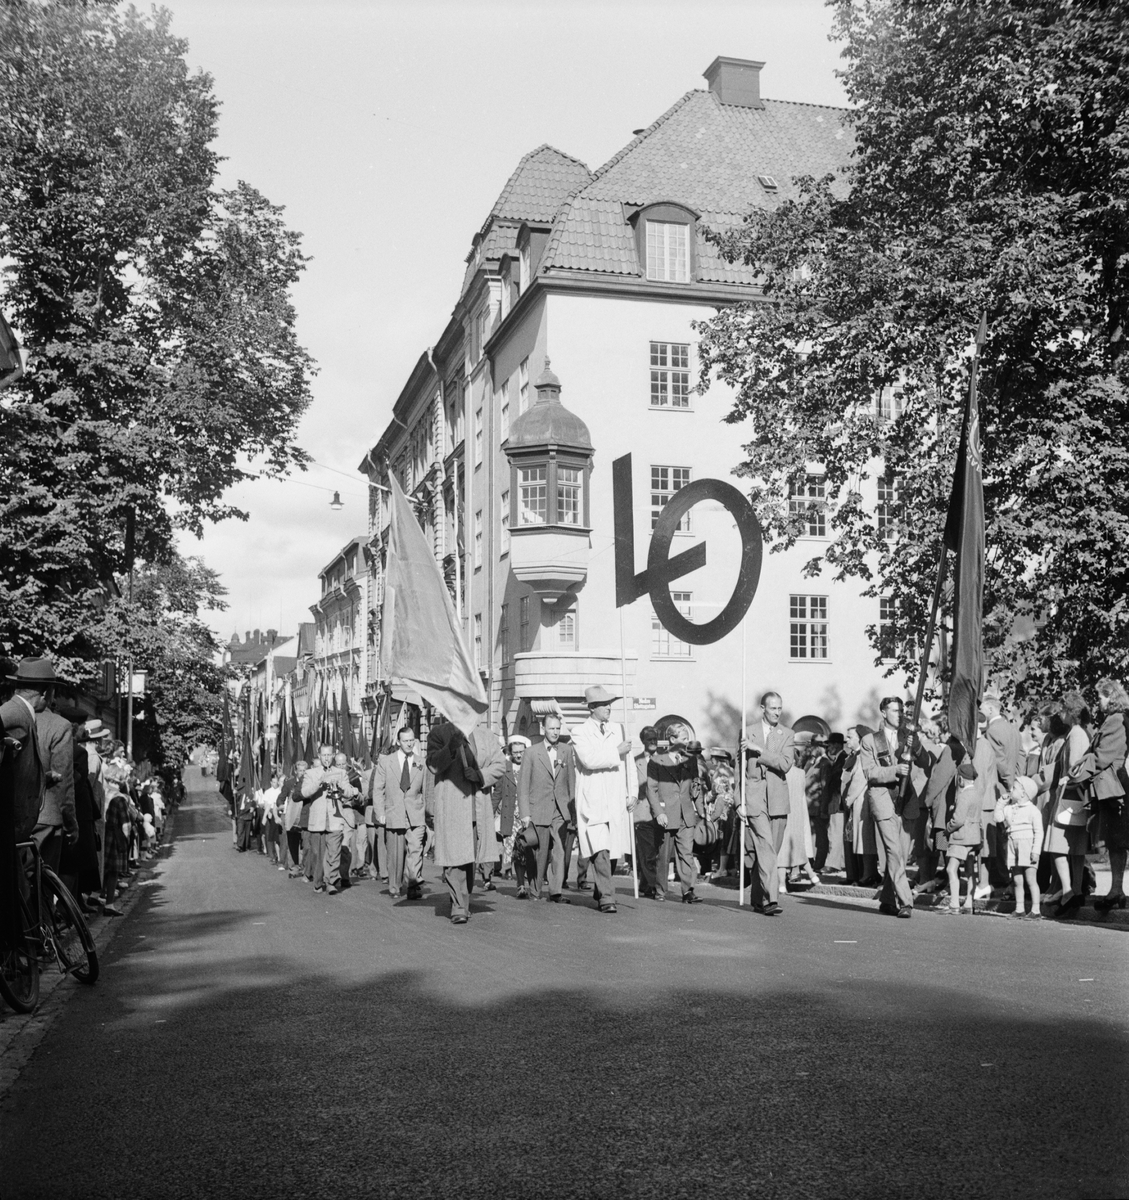 Landsorganisationens 50-årsjubileum, parad på Drottninggatan, Uppsala 1948